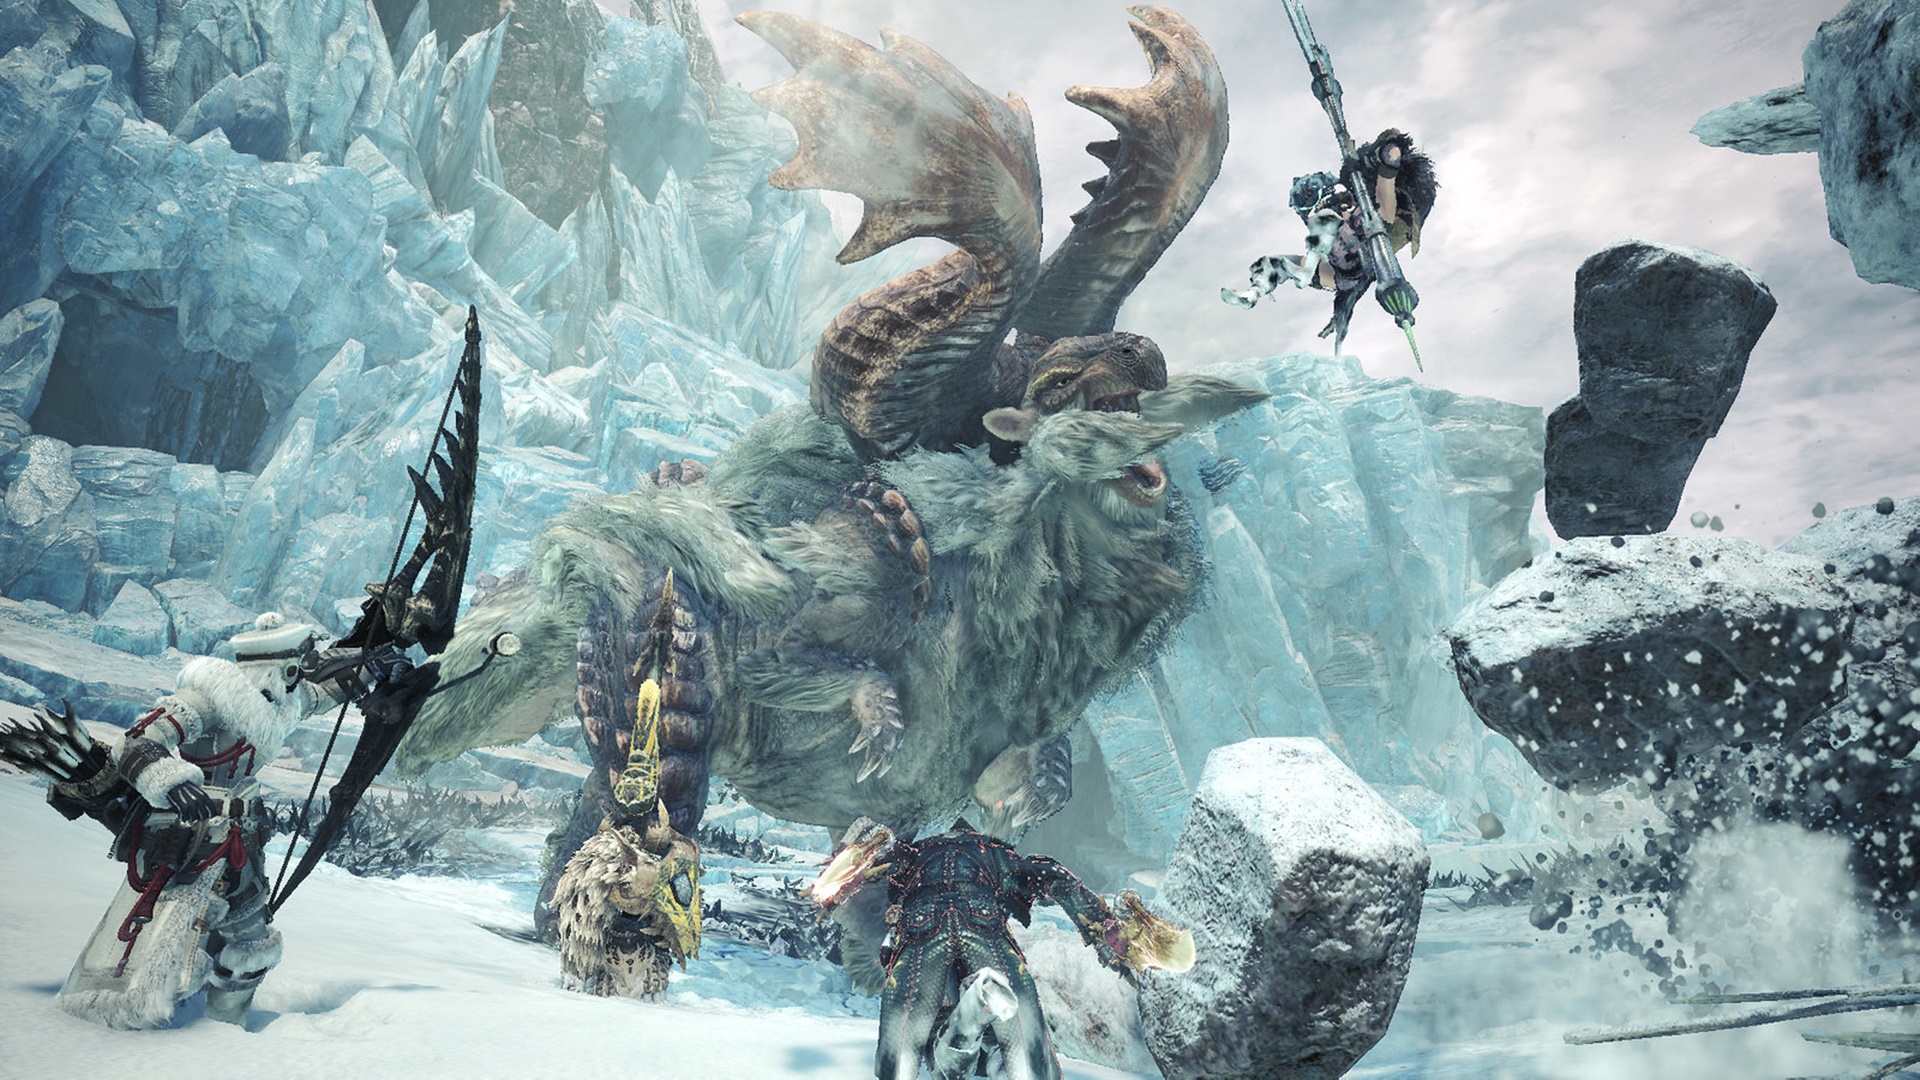 Diablos - Monster Hunter World: Iceborne Guide - IGN